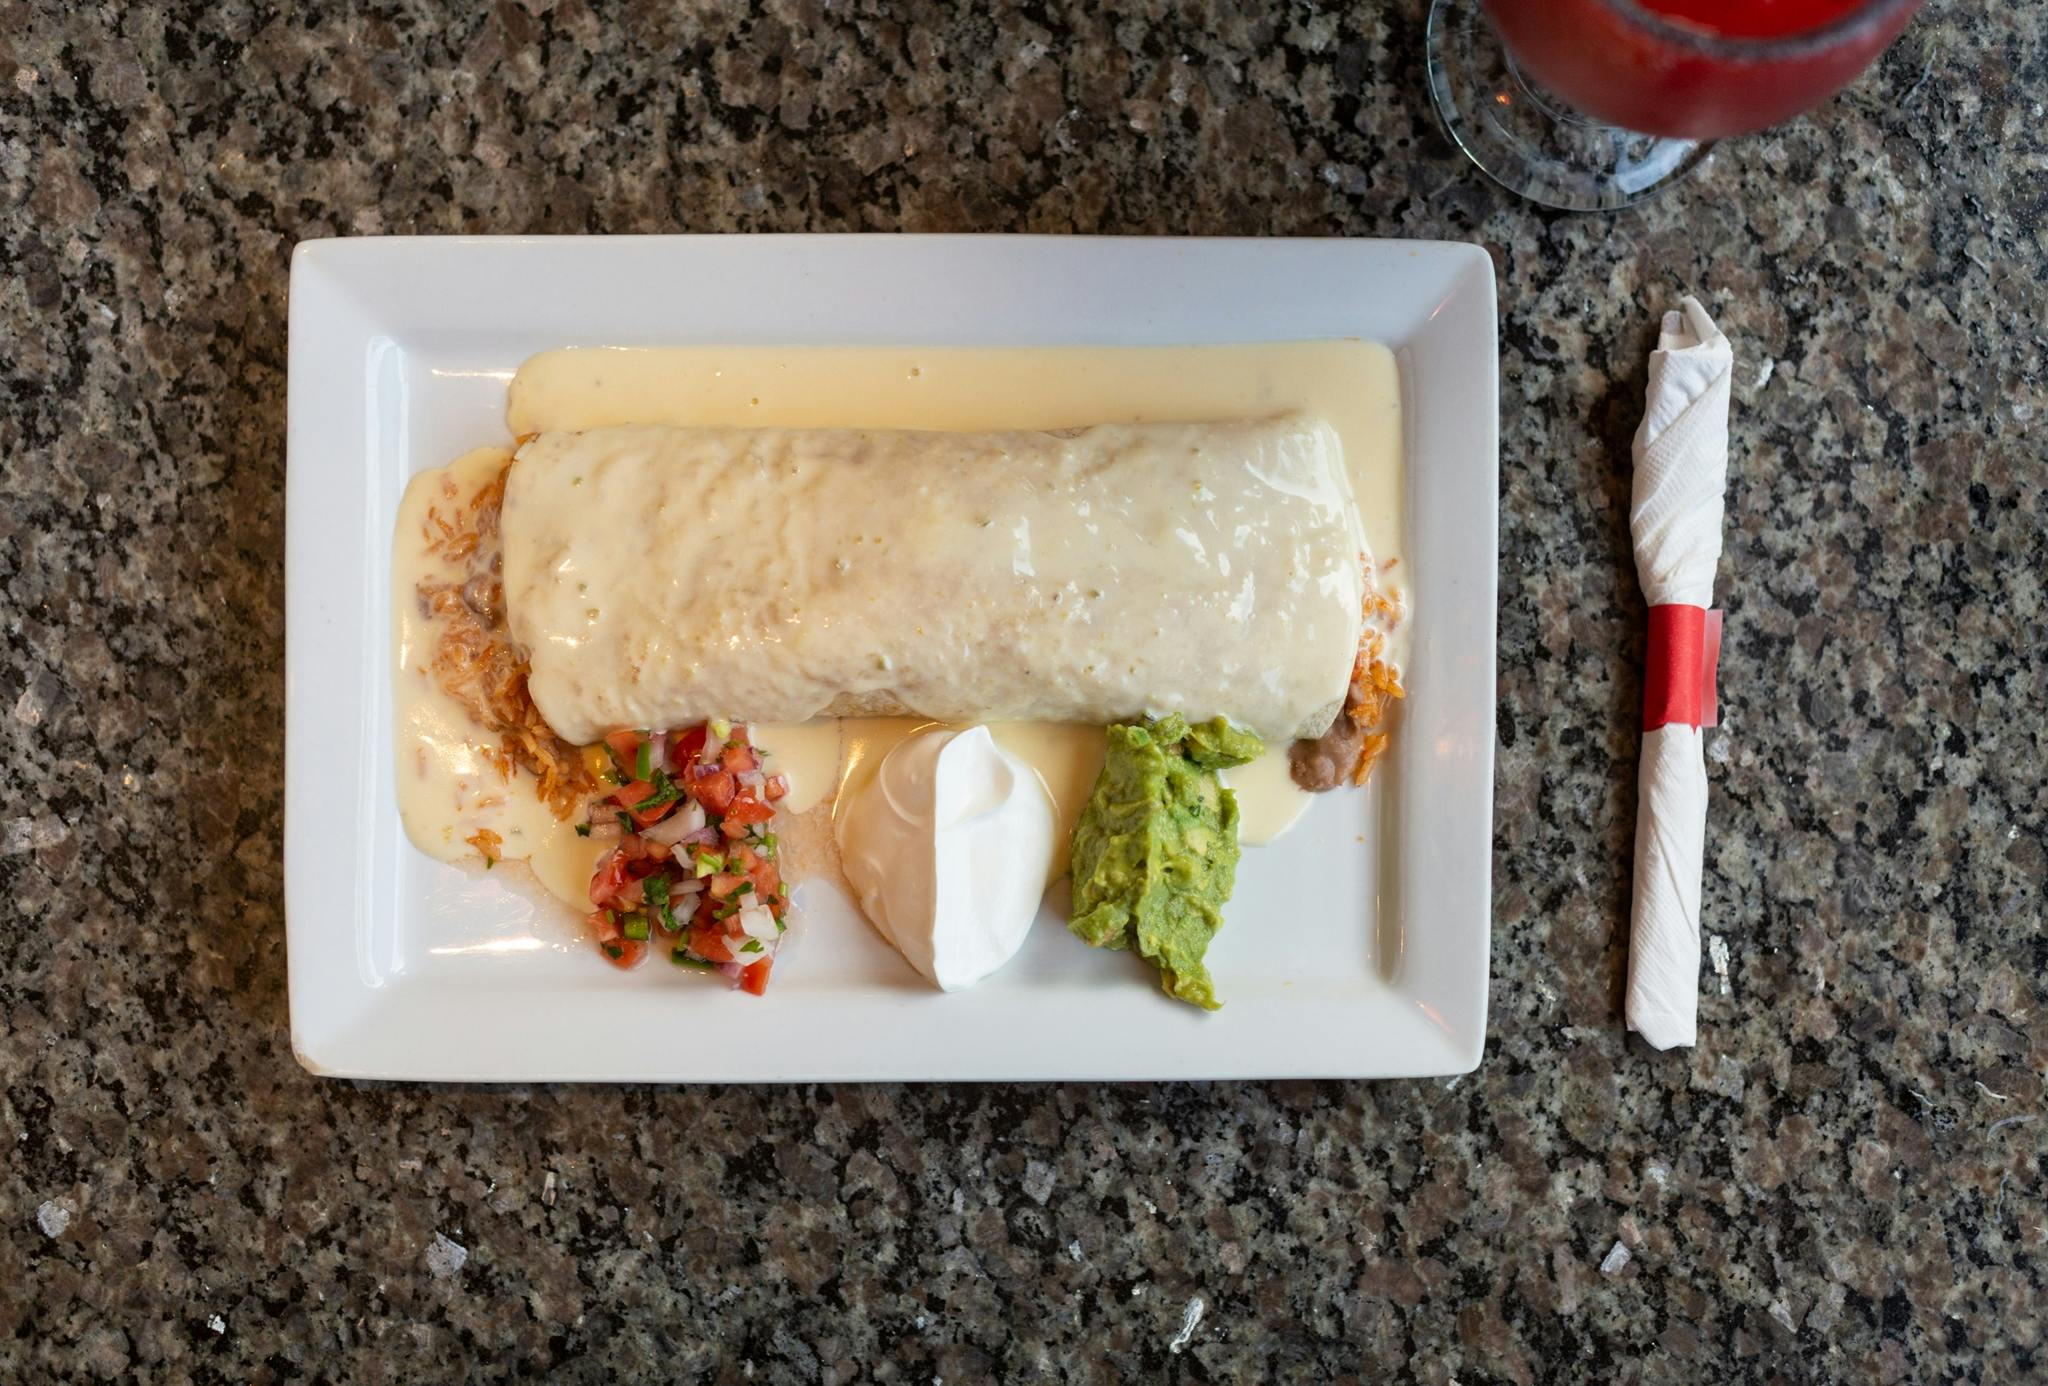 Burrito Gigante from El Mezcal in Lawrence, KS